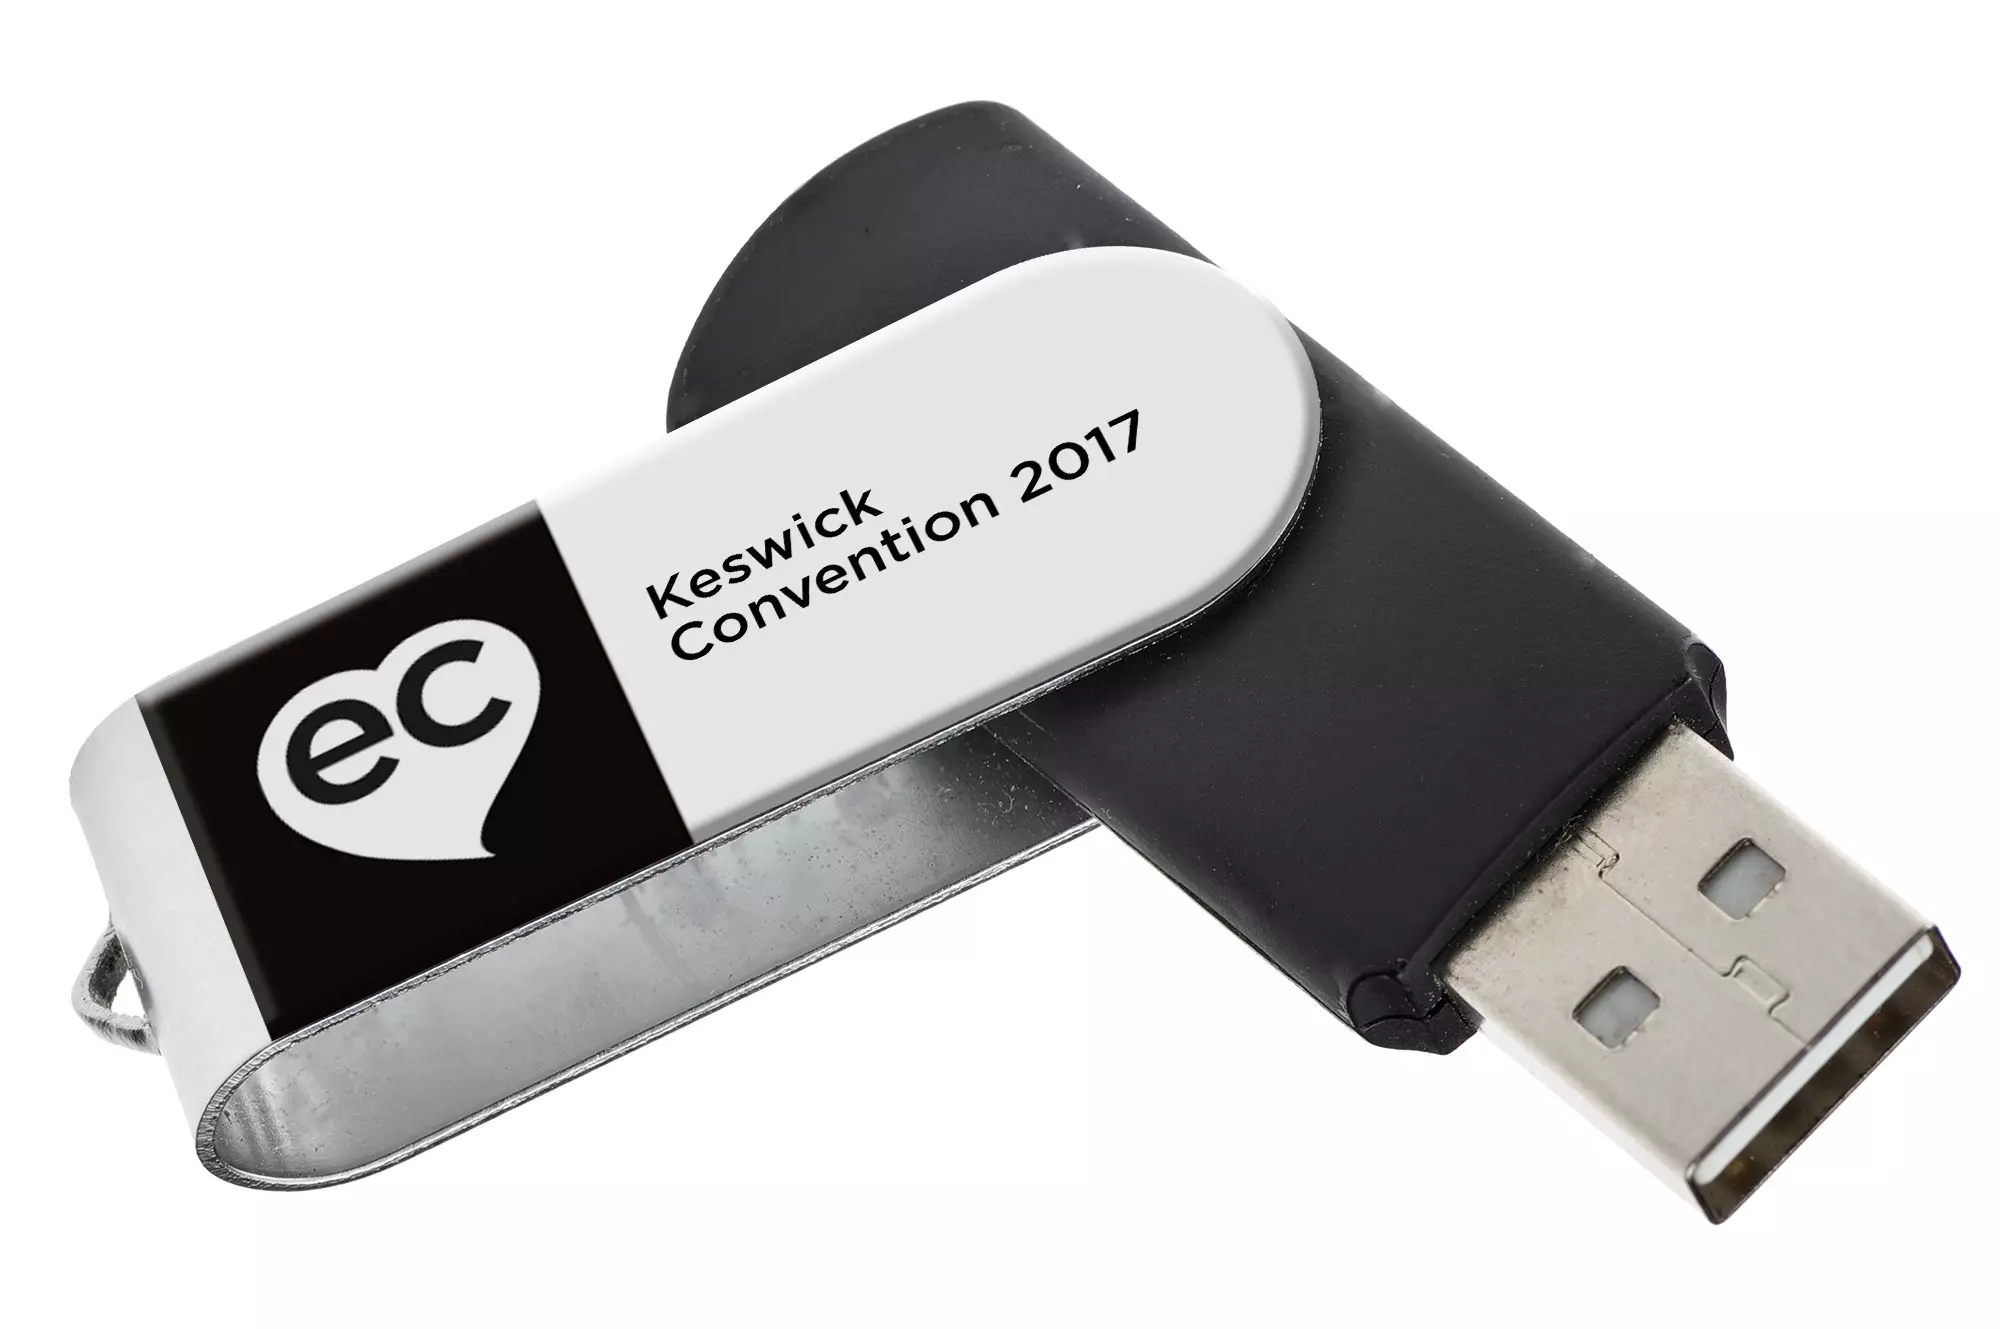 Keswick 2017 week 2 all videoed talks MP4 USB a talk from Keswick Convention